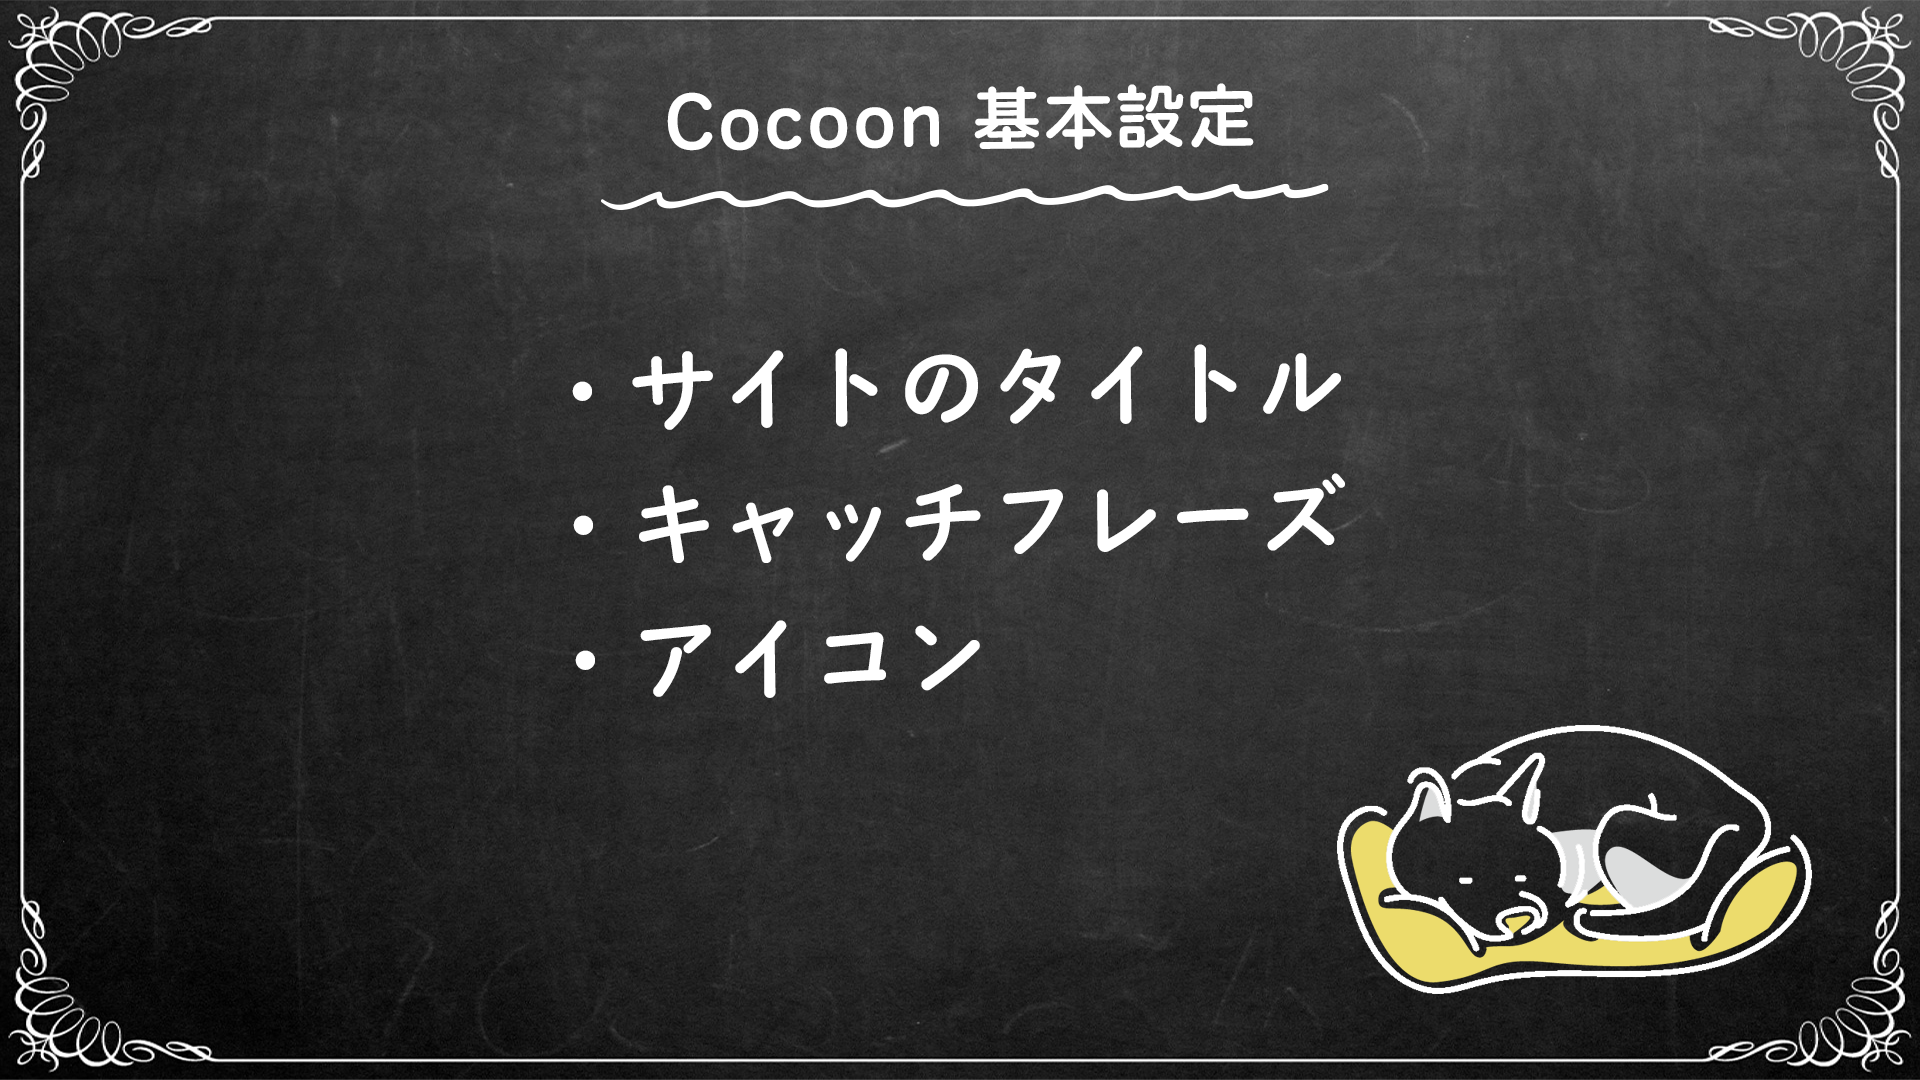 Cocoon設定タイトル画像